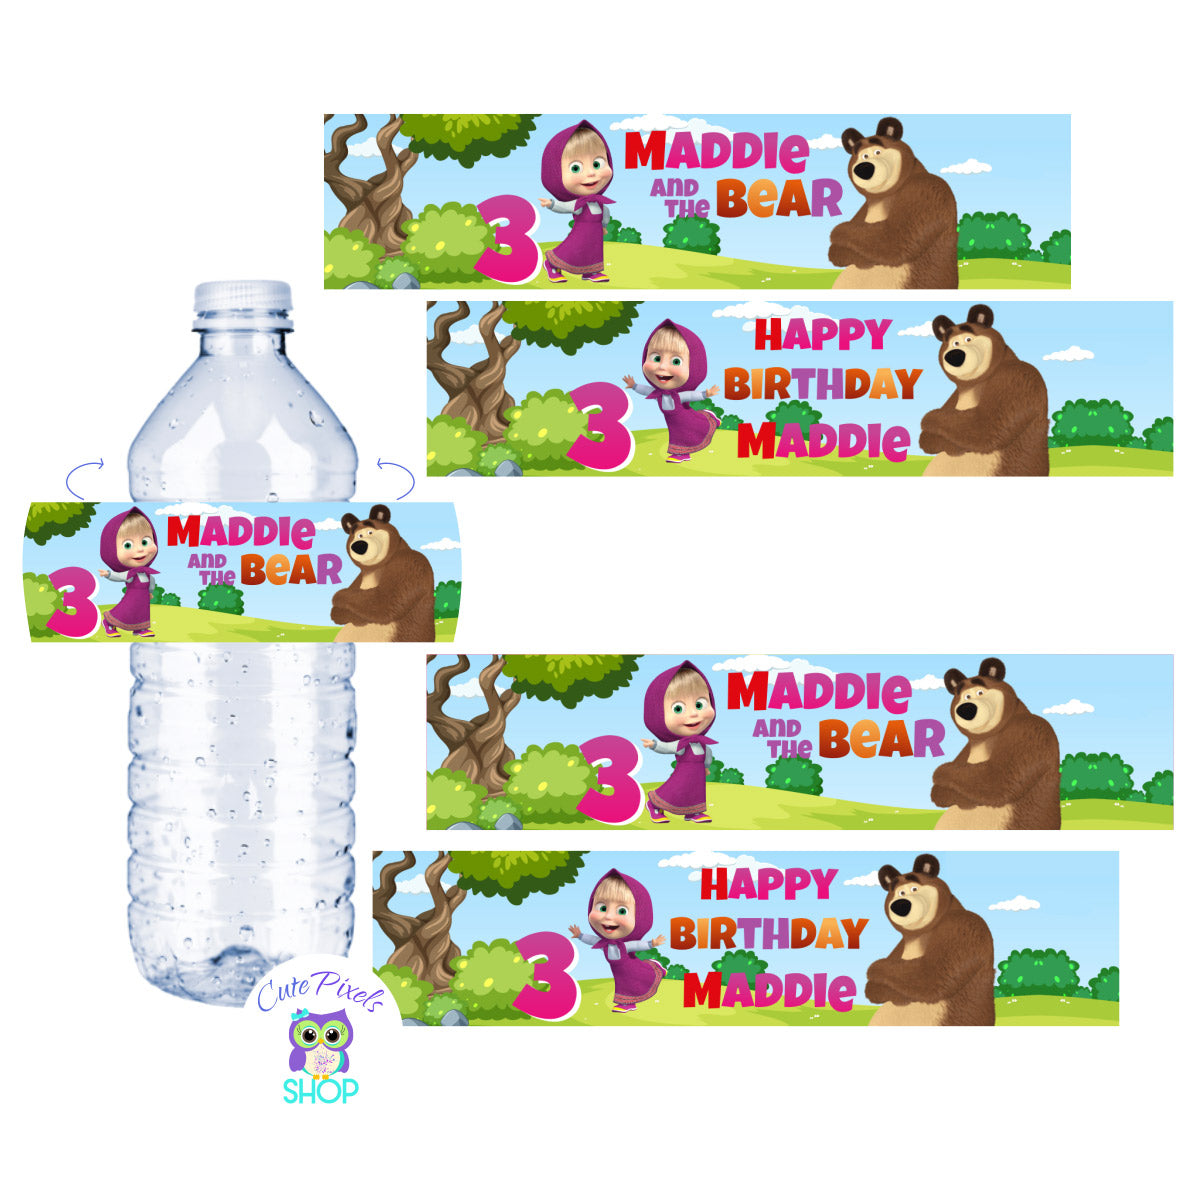 Encanto Water Bottles - Favor Water Bottles - Encanto Birthday Party -  Encanto Favors - Encanto Party - Water Bottle Labels